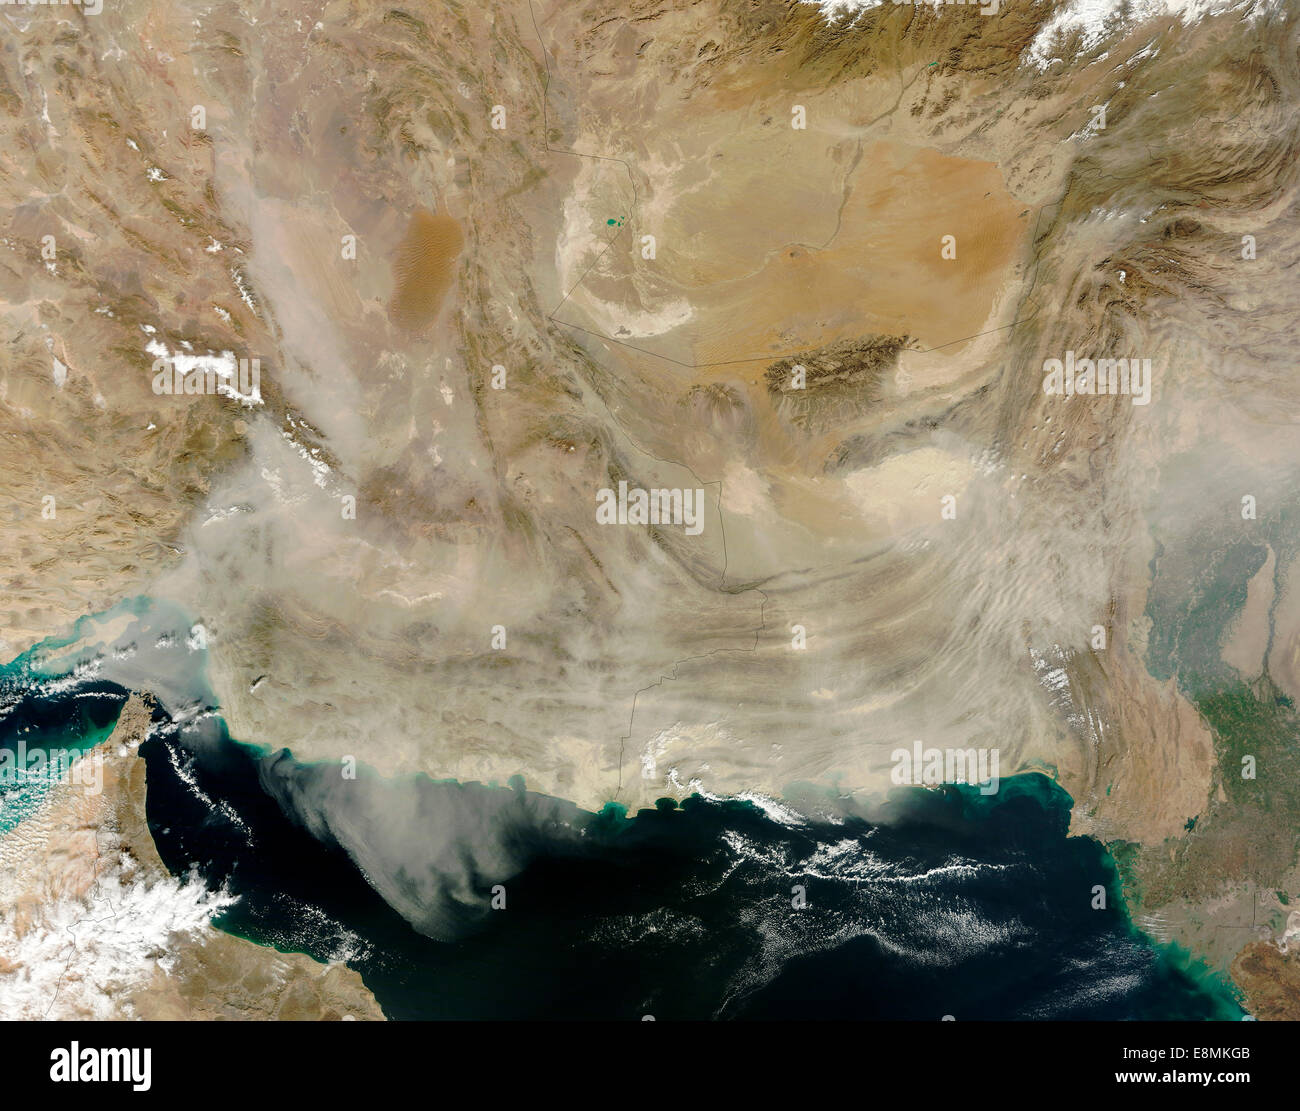 Enero 12, 2013 - Vista satélite de una tormenta de polvo que se extiende desde la costa de Pakistán hacia el Estrecho de Ormuz. Lo suficientemente grueso para Foto de stock